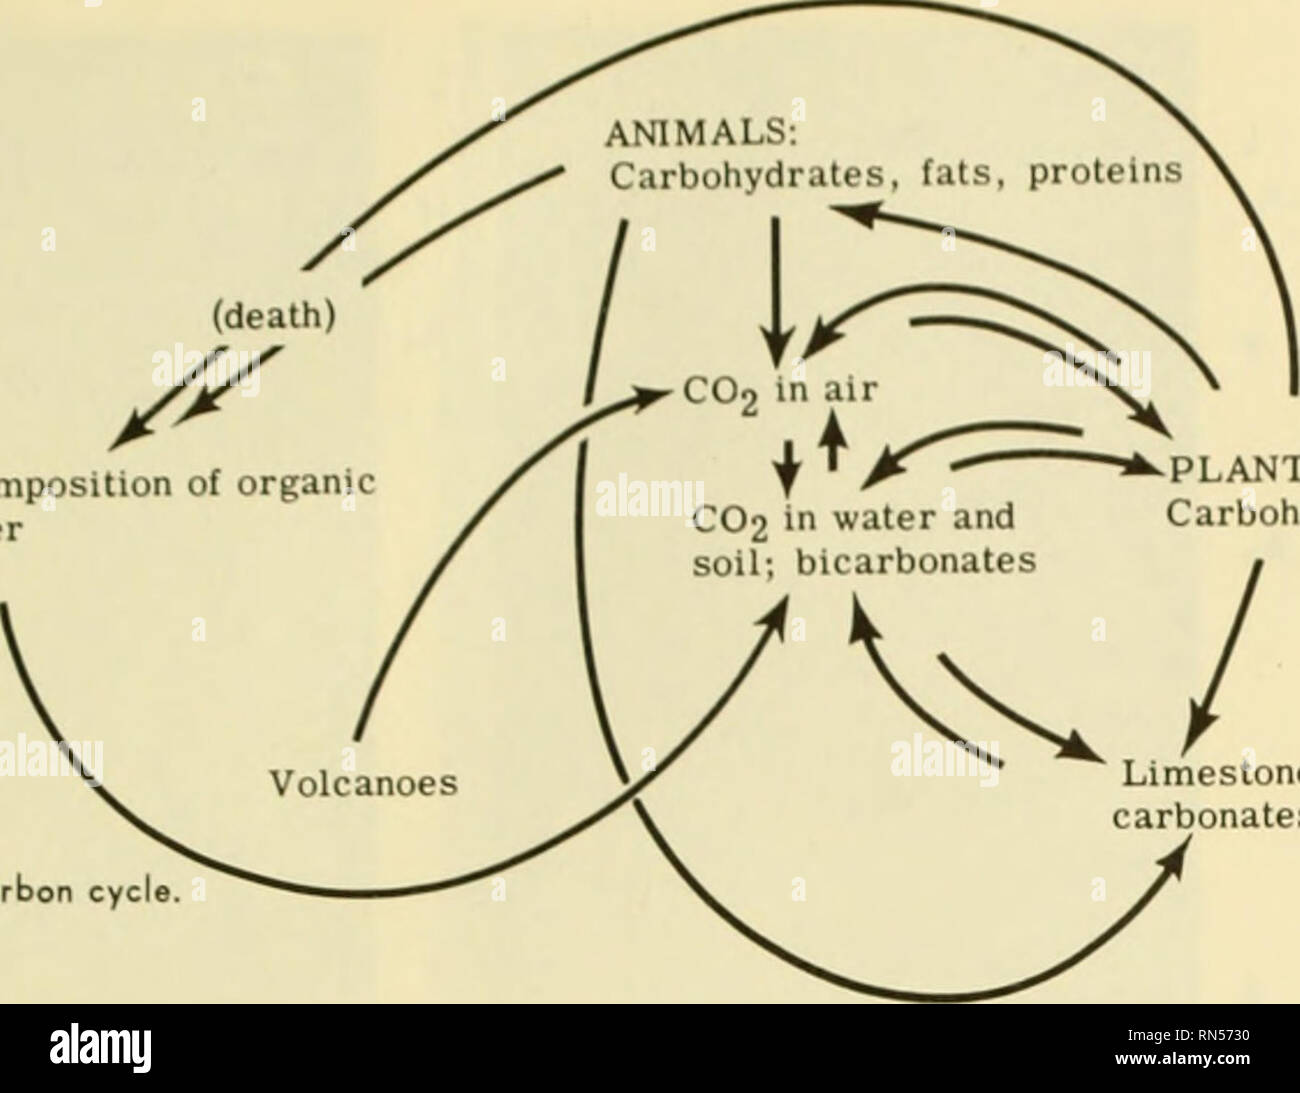 . L'écologie animale. L'écologie animale. La décomposition de la matière organique CO2 dans l'air jf"^ » IMPLANTS : CO2 dans l'eau et de glucides, lipides, protéines de bicarbonates le calcaire, le charbon, le pétrole, les carbonates etc. FIG. J'ai 1-2 l'eyeh carbone (pas de nitrites ;) et les nitrates (NO3) par l'ac- tion de bactéries autotrophes : le processus est appelé la nitrification. D'autres types de bactéries agissent sur l'ammoniac dans le processus de dénitrification. par où l'azote (NO) est libéré dans l'atmosphère. L'azote est extraite de l'air par les bactéries fixatrices d'azote qui vivent librement dans le sol ou comme dans les symbiotes roo Banque D'Images